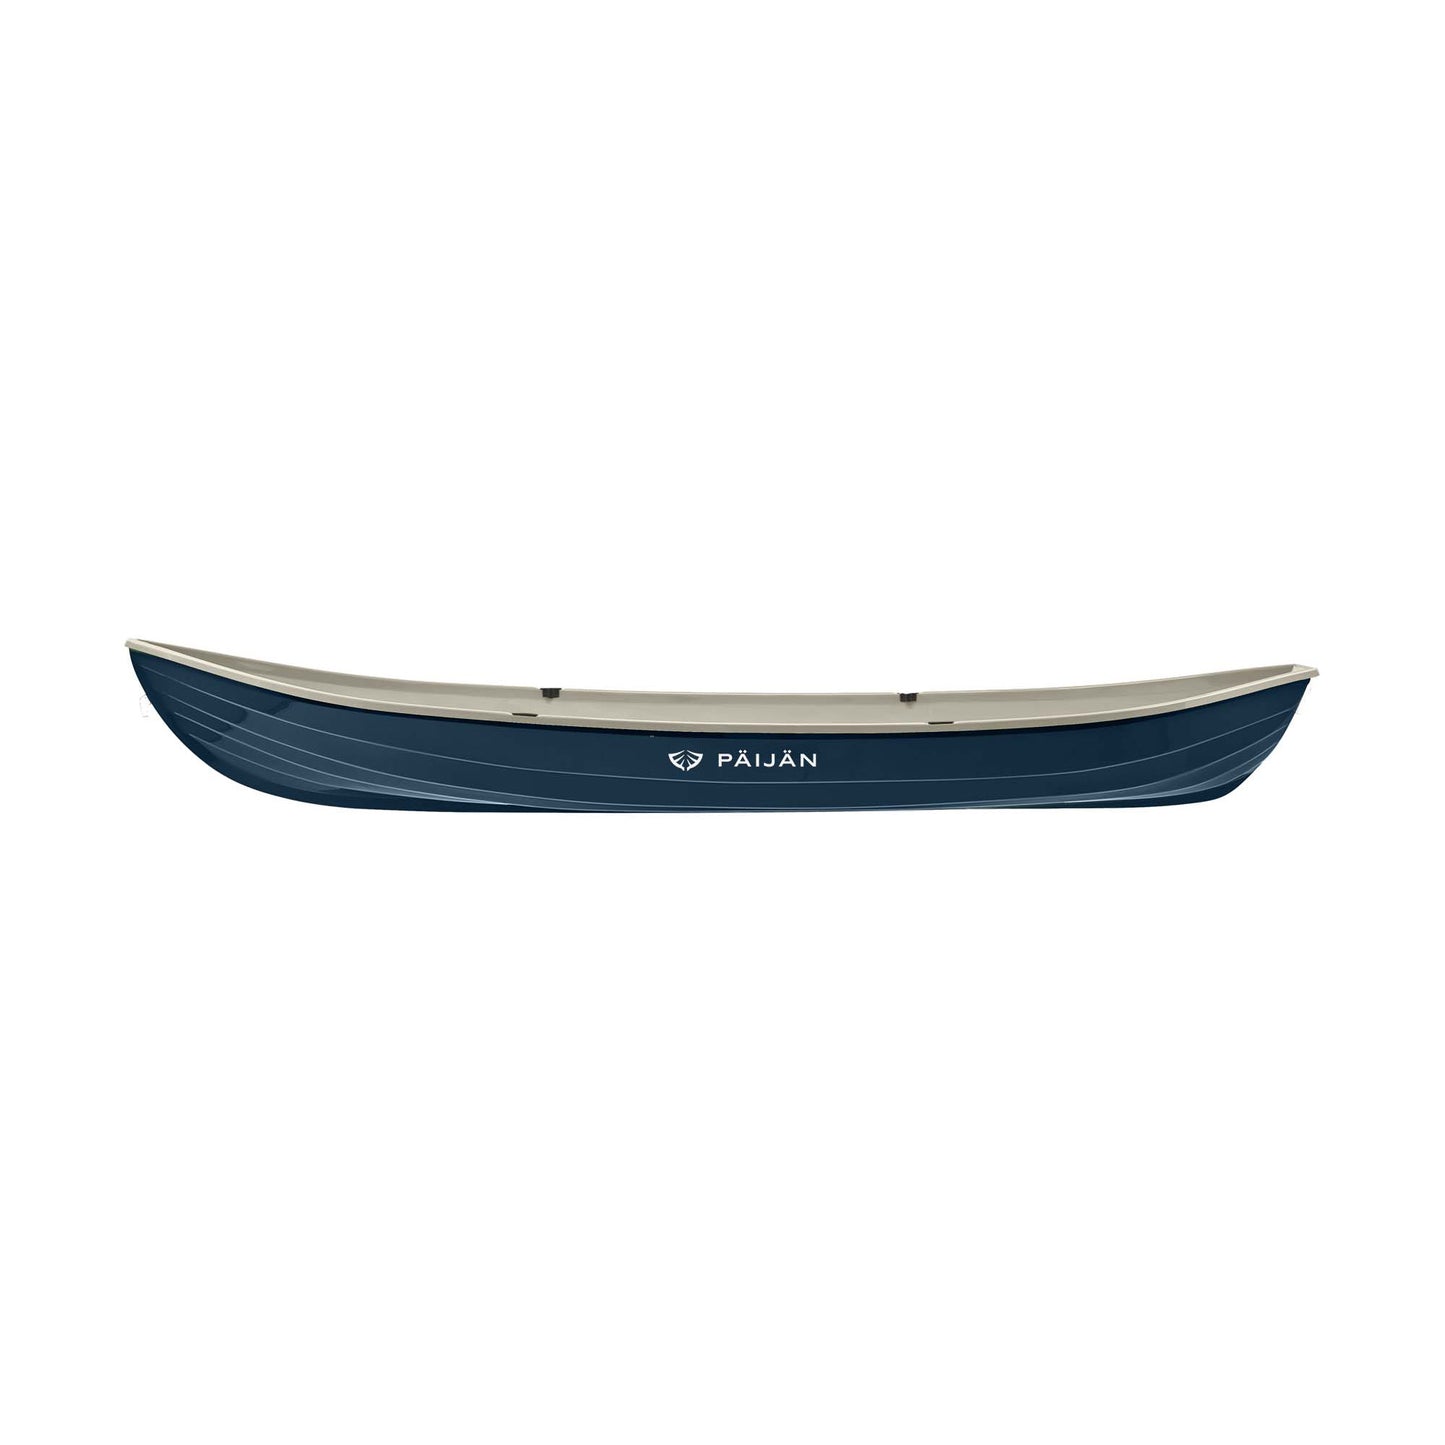 Päijän Syvänne 520L rowing boat - Limited Edition